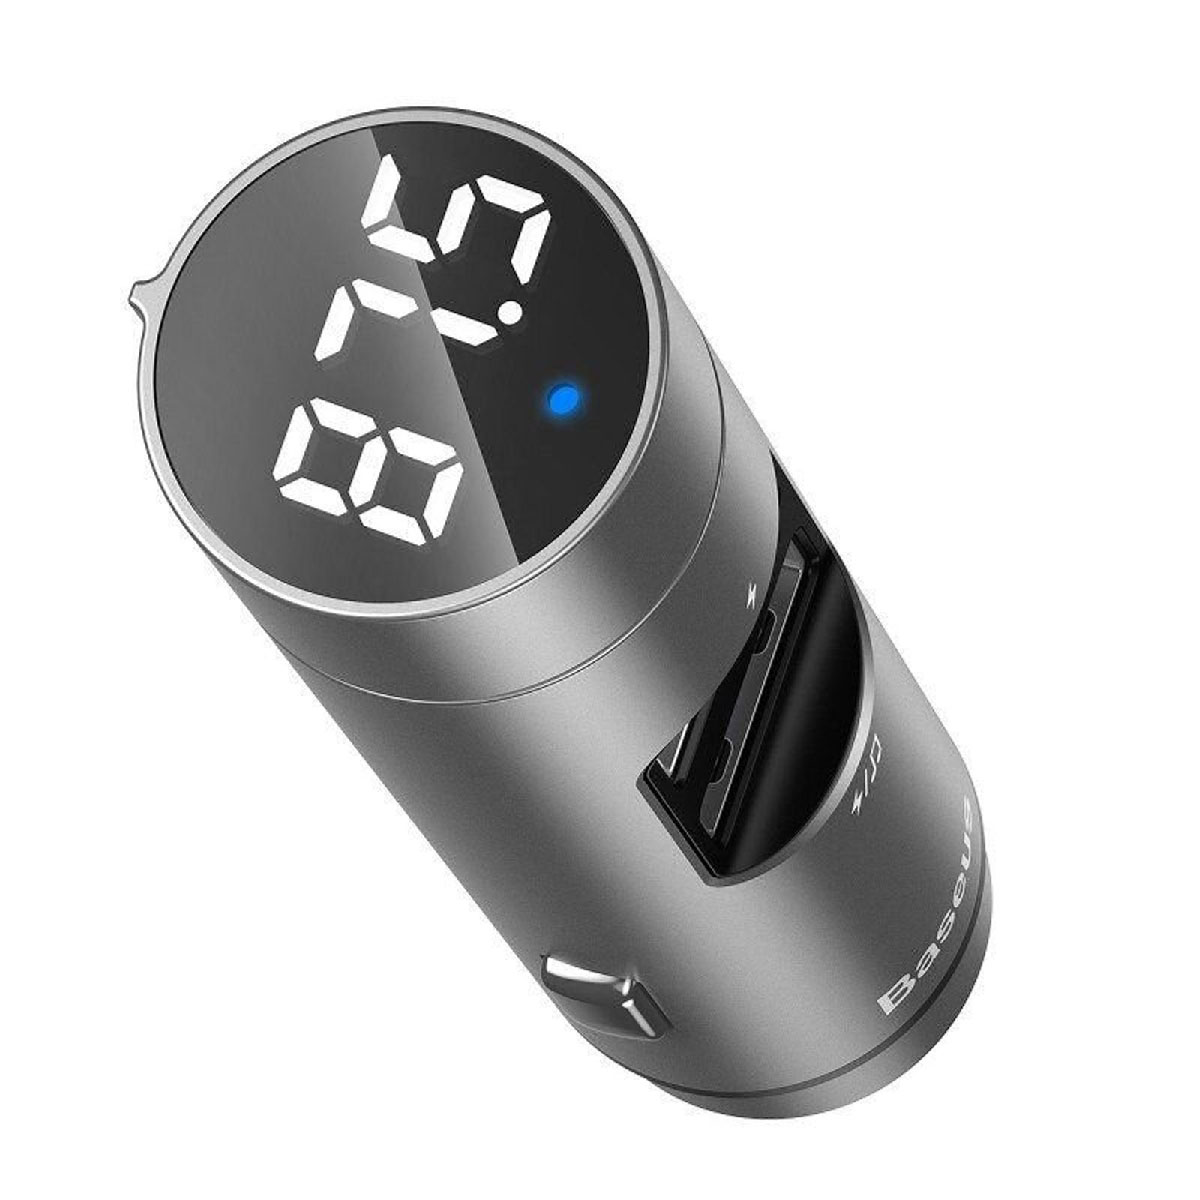 АЗУ (Автомобильное зарядное устройство) с FM-трансмиттером, 2 порта USB, Baseus Energy Column Car Wireless MP3, цвет серебристый